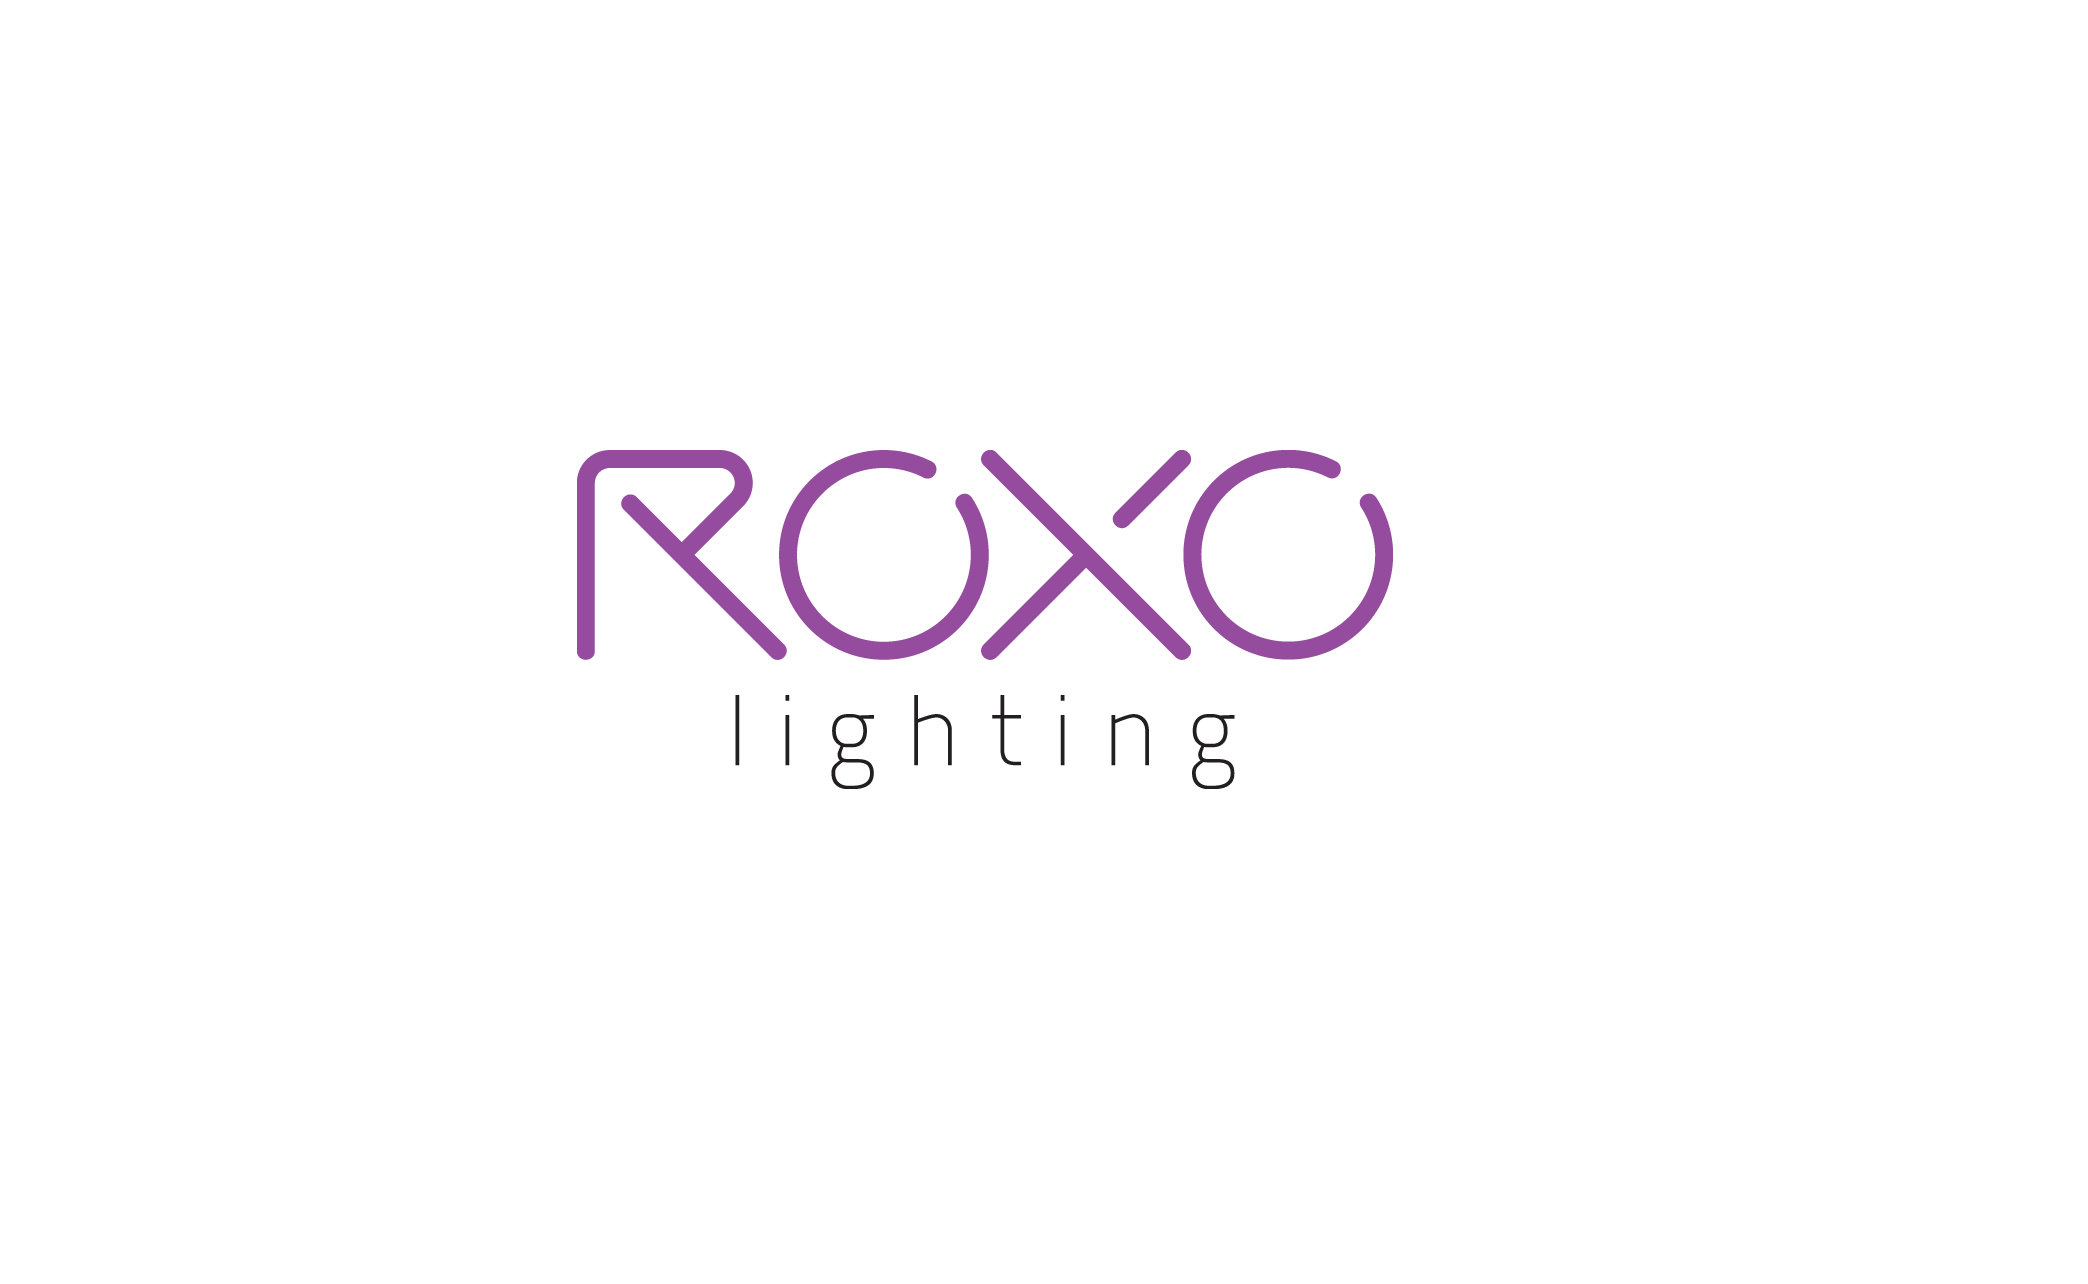 ROXO lighting geleverd door Canlux projectverlichting